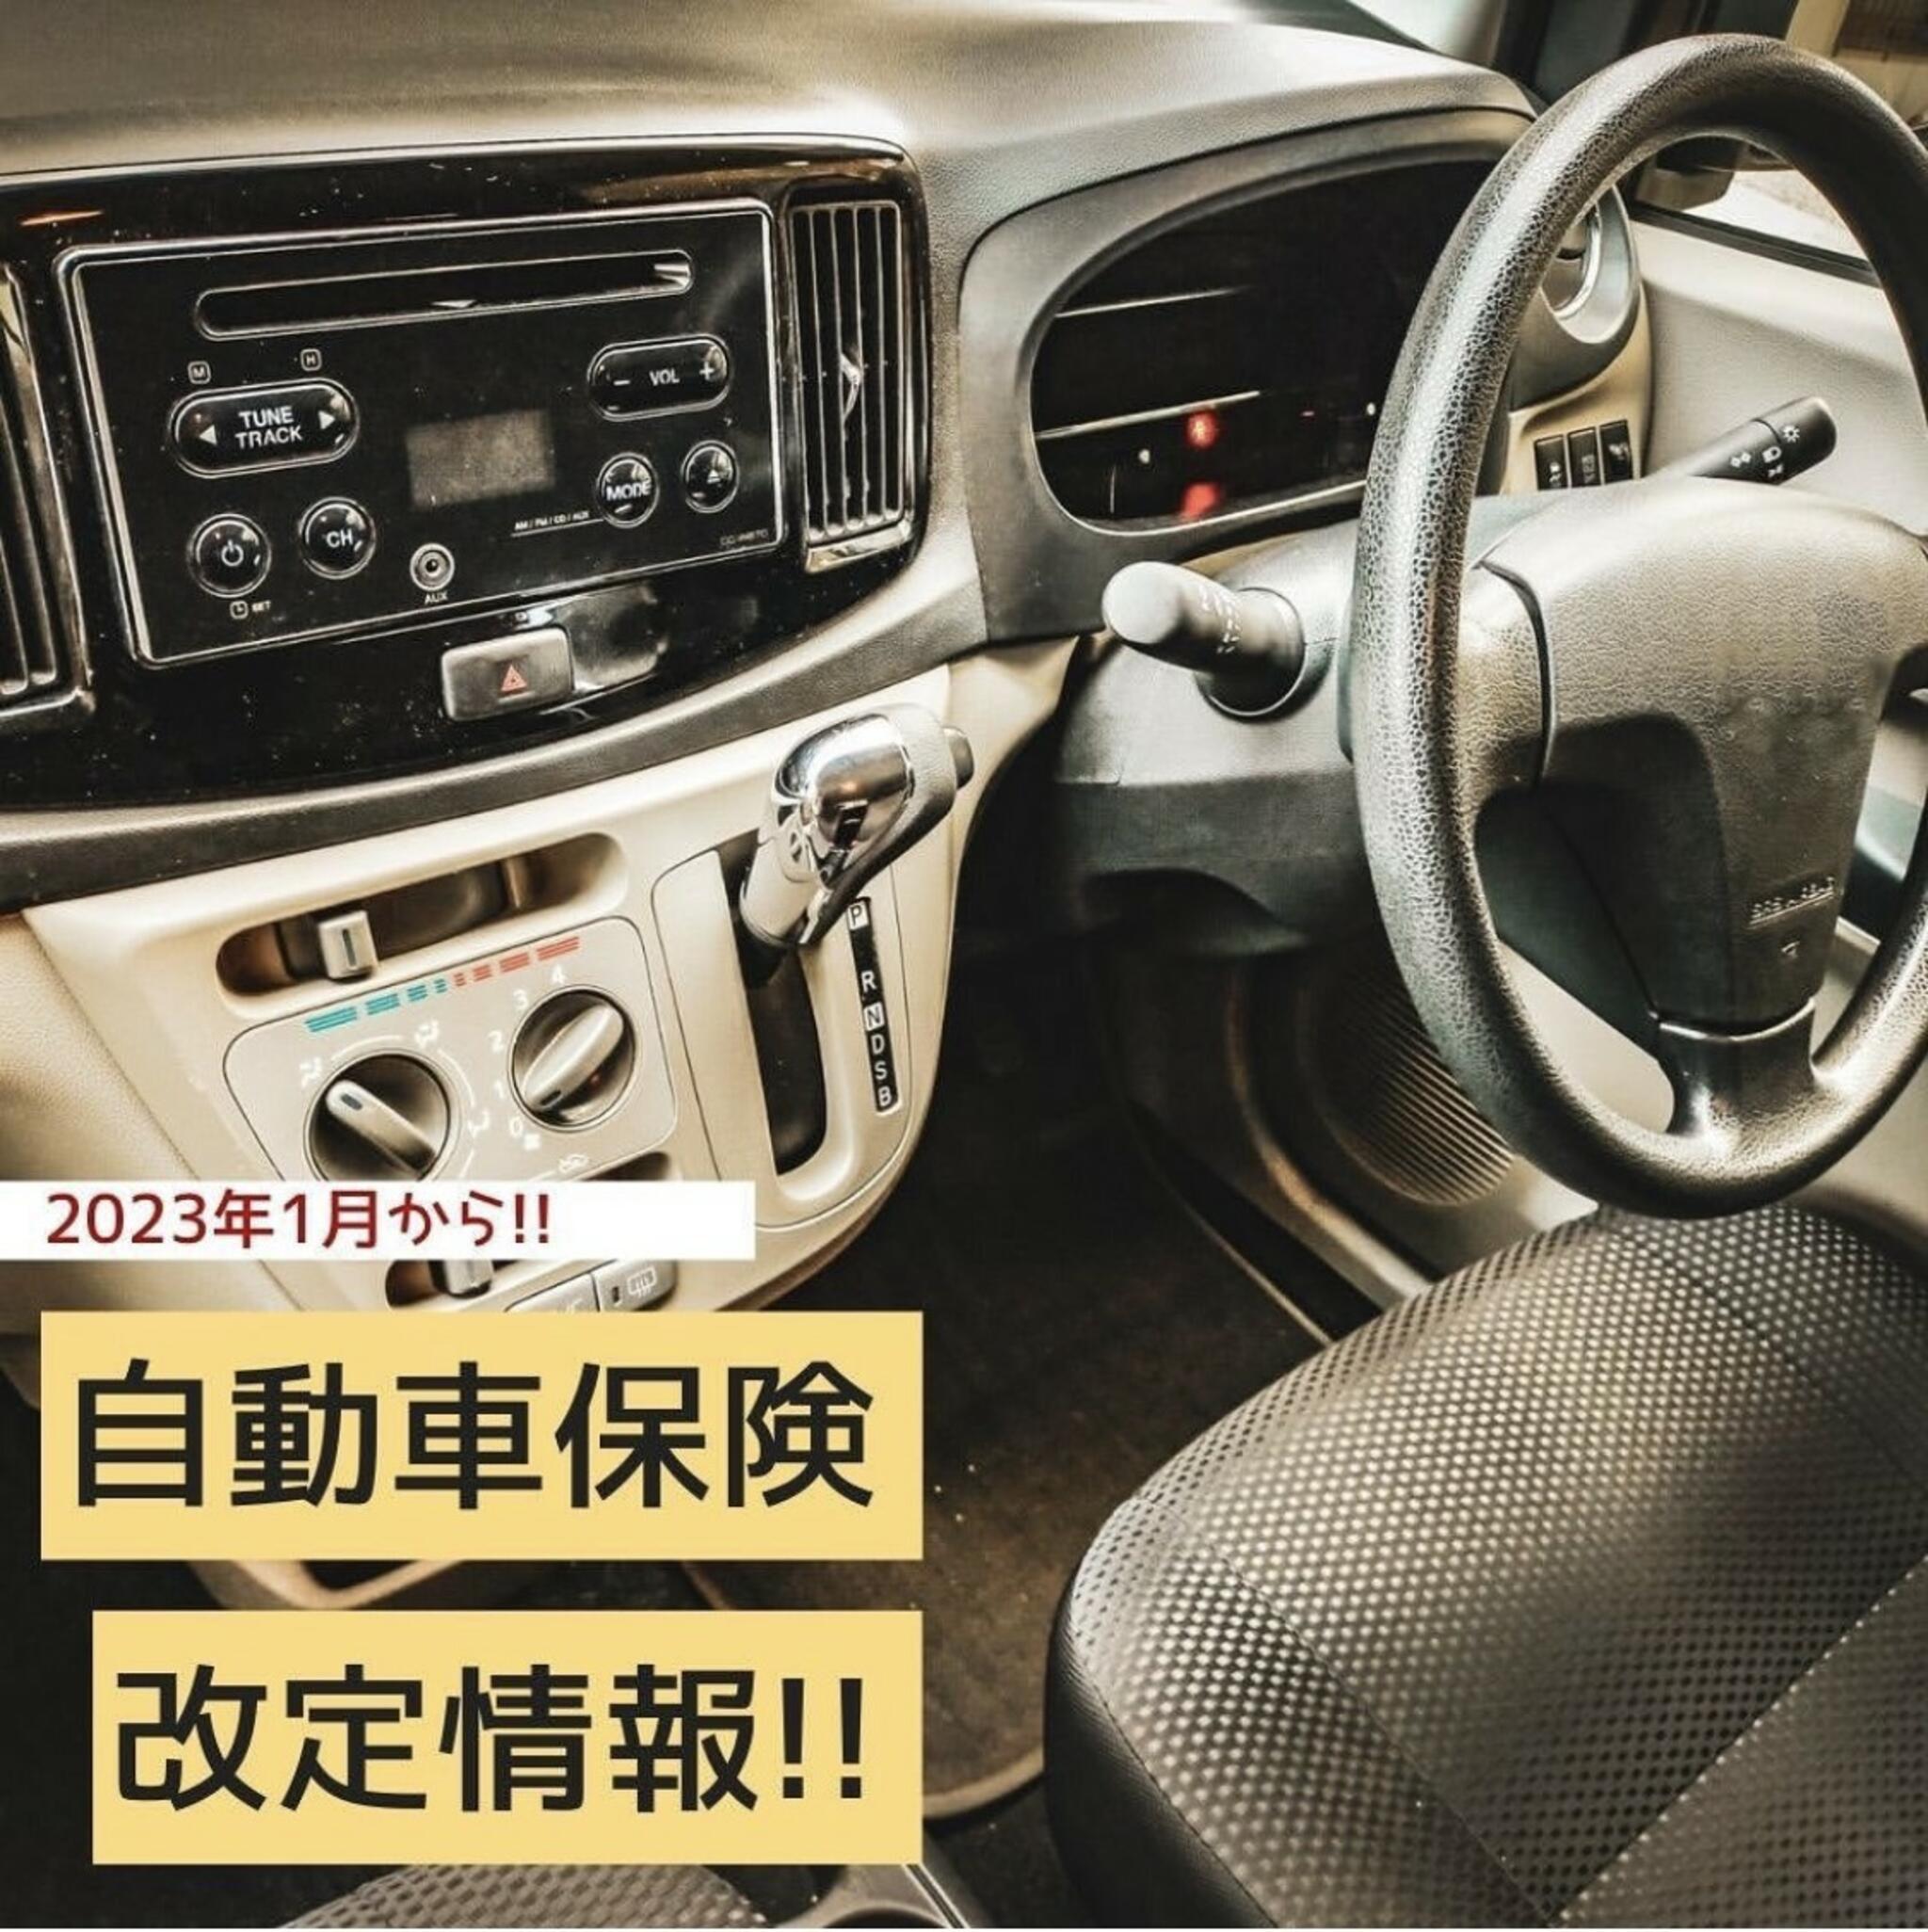 くらしの保険室 イオン県央店からのお知らせ(2023年1月より、一部自動車保険が改定になりました！)に関する写真